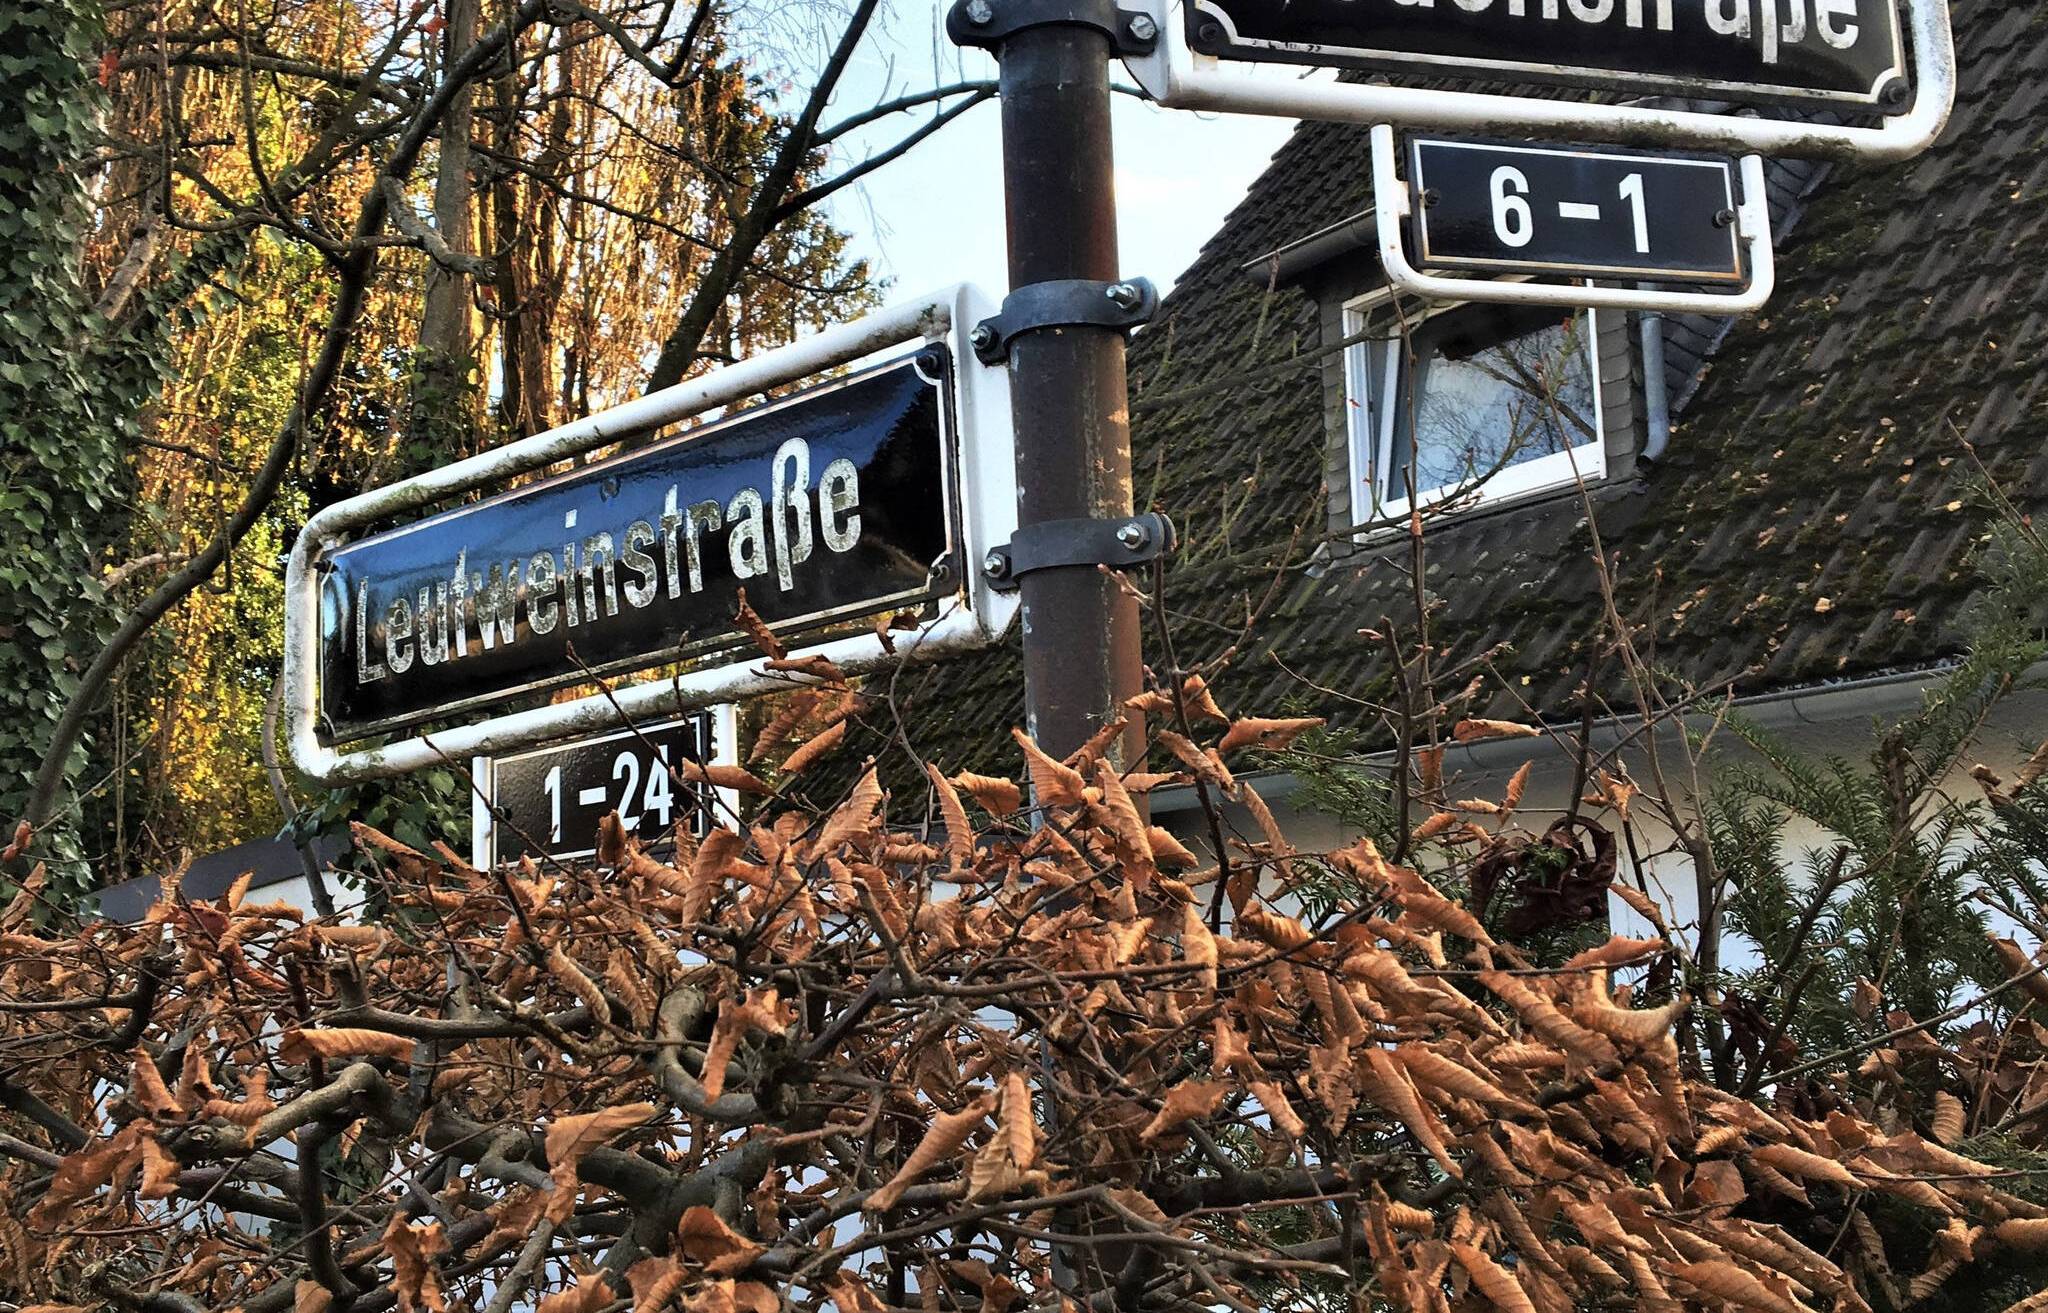  Die Umbenennung historisch belasteter Straßennamen ist vom Stadtrat auf den Weg gebracht - aus der Leutweinstraße in Urdenbach wird etwa der Auenblick. Foto: Archiv 